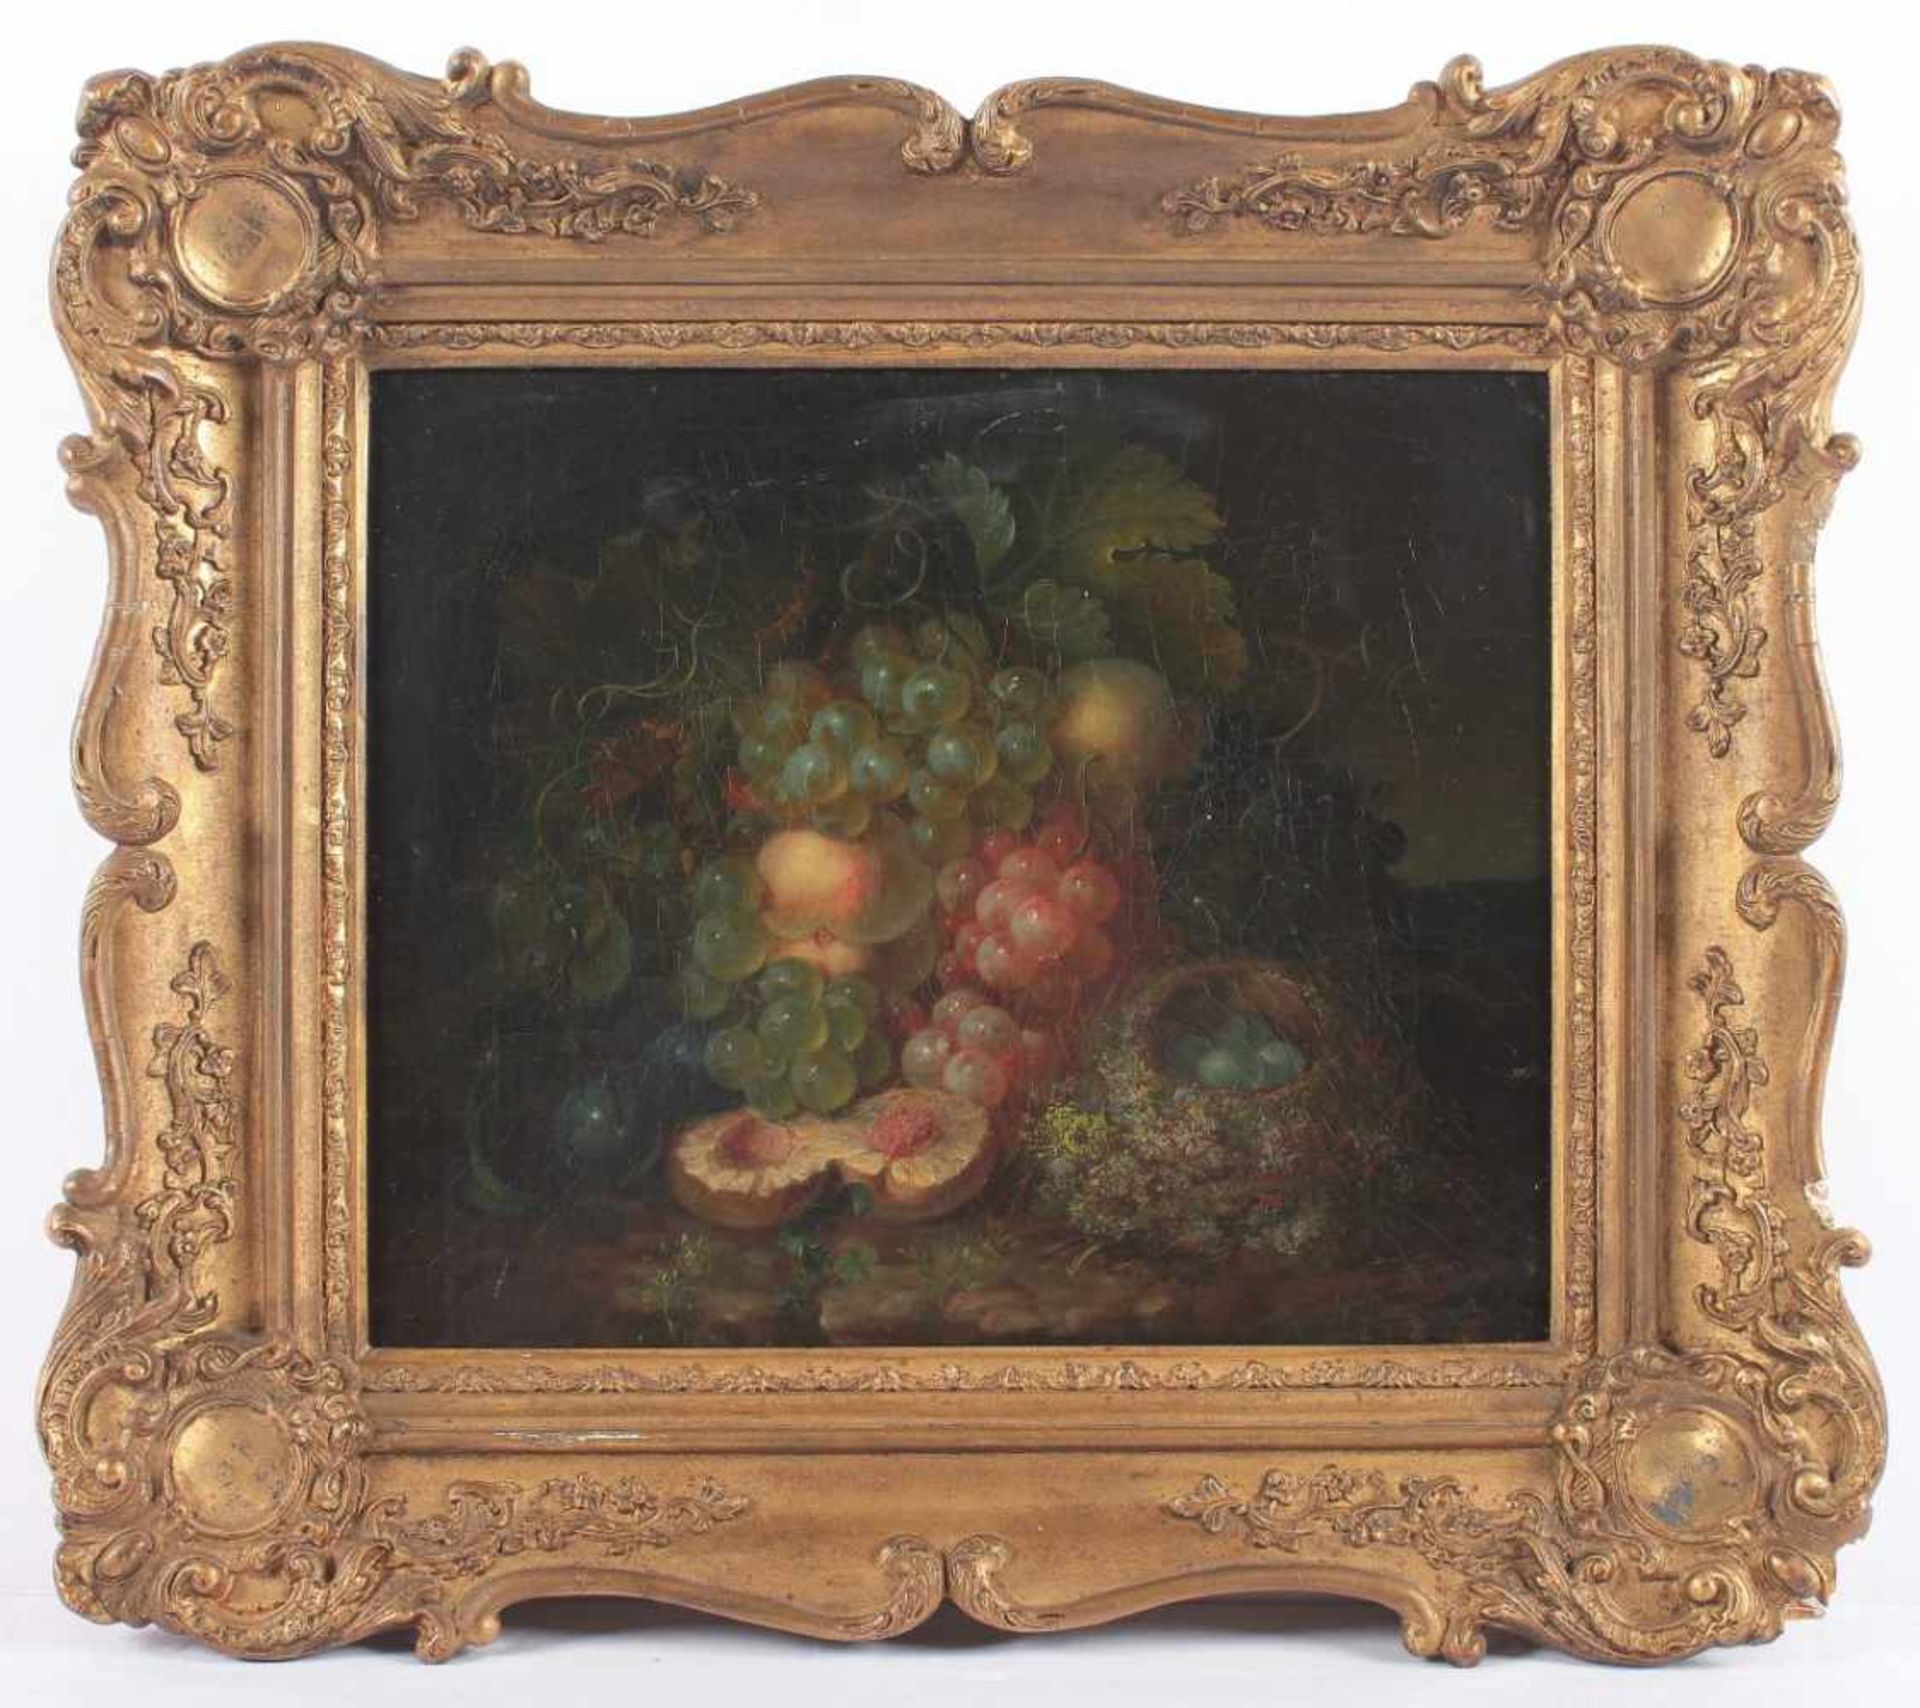 FORSTER, George E. (1817-1896), "Stilleben mit Früchten", Öl/Lwd., 30,5 x 36,5, auf Hartfaser - Bild 2 aus 4